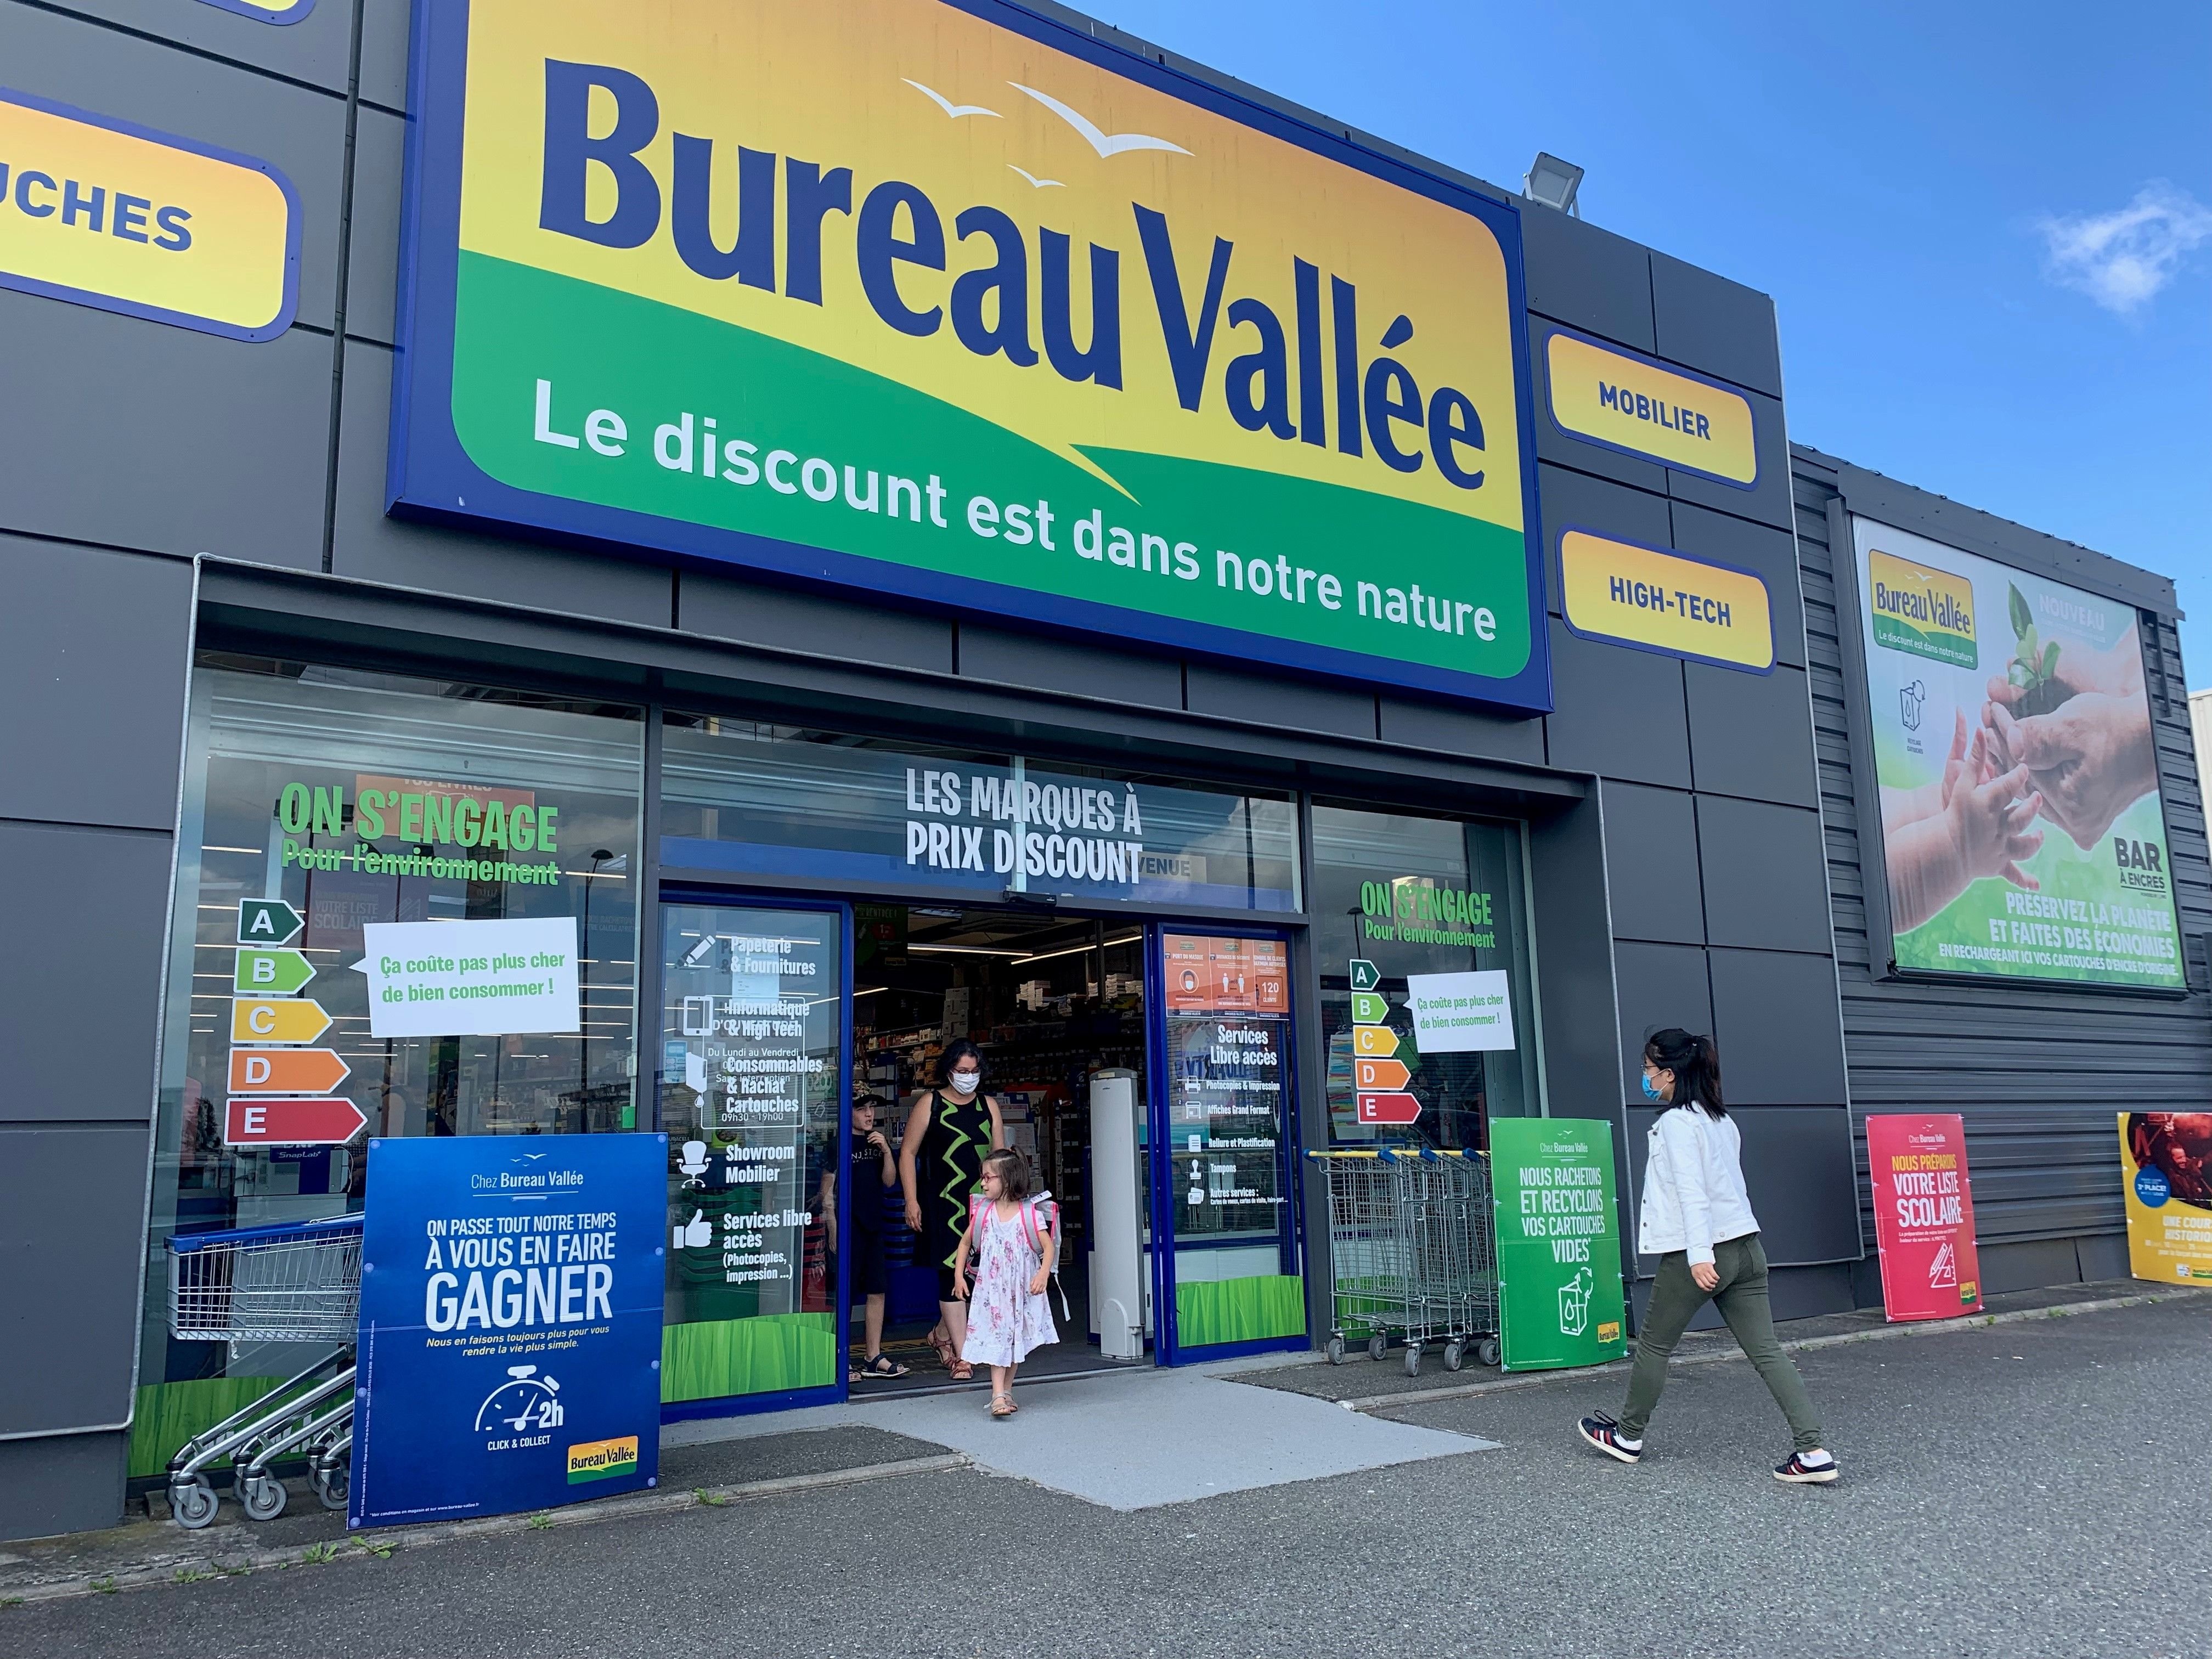 Au Bureau Vallée de Buchelay (Yvelines), «les prix sont attractifs et il y a plus de choix, contrairement à Intermarché ou Leclerc», estime une mère de famille. LP/Z.D.